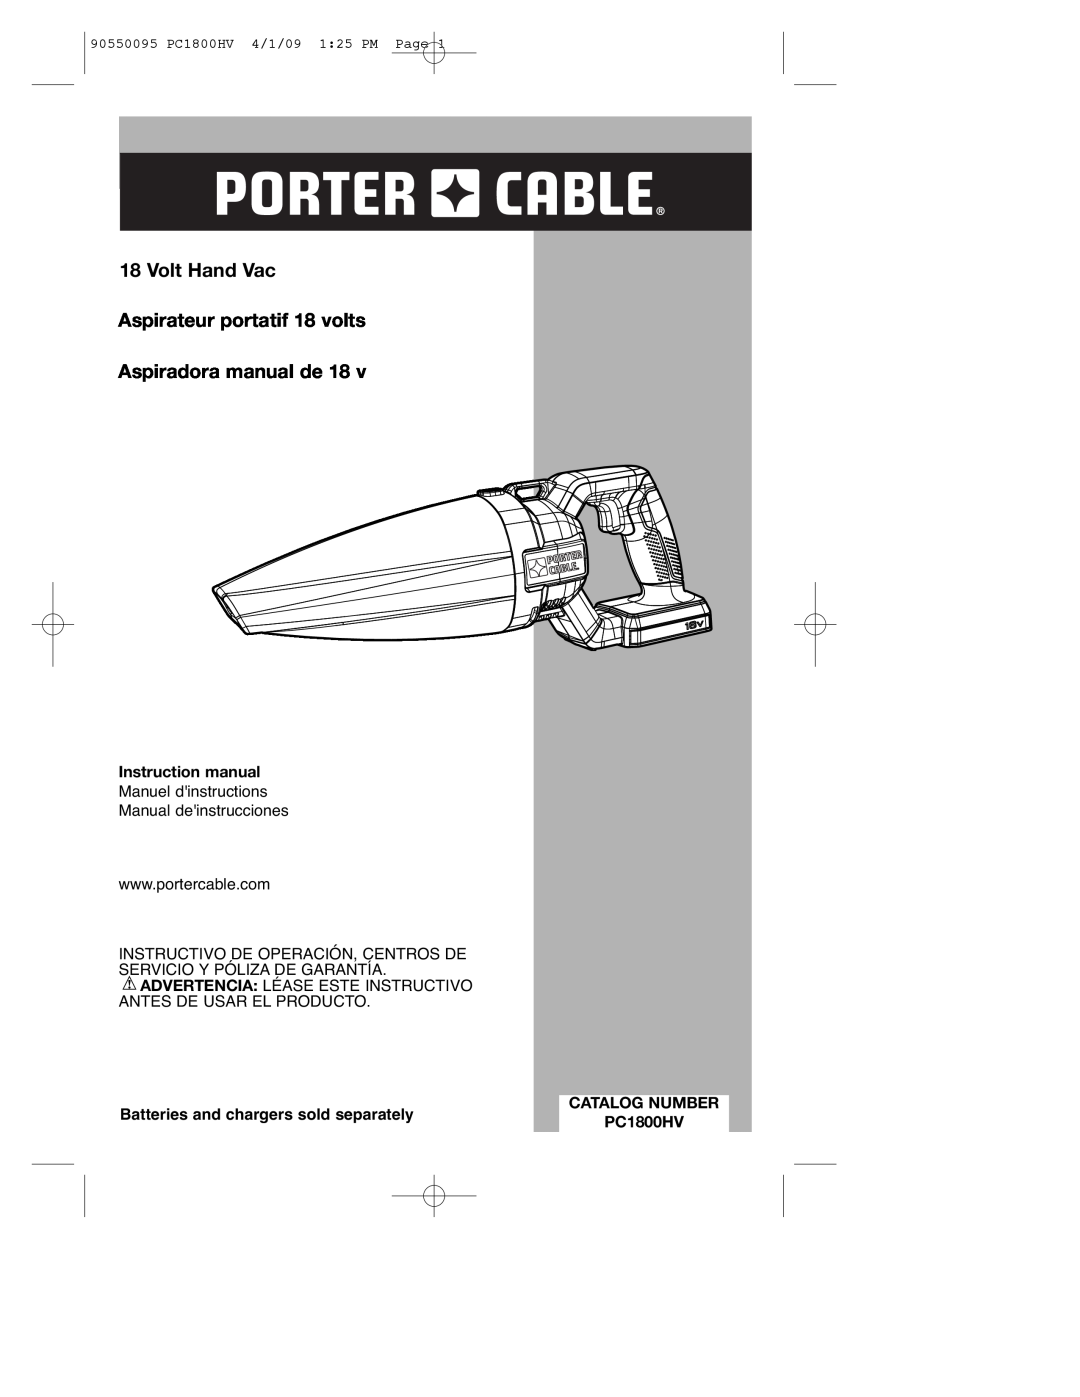 Porter-Cable PC1800HV instruction manual Volt Hand Vac Aspirateur portatif 18 volts, Aspiradora manual de, Catalog Number 